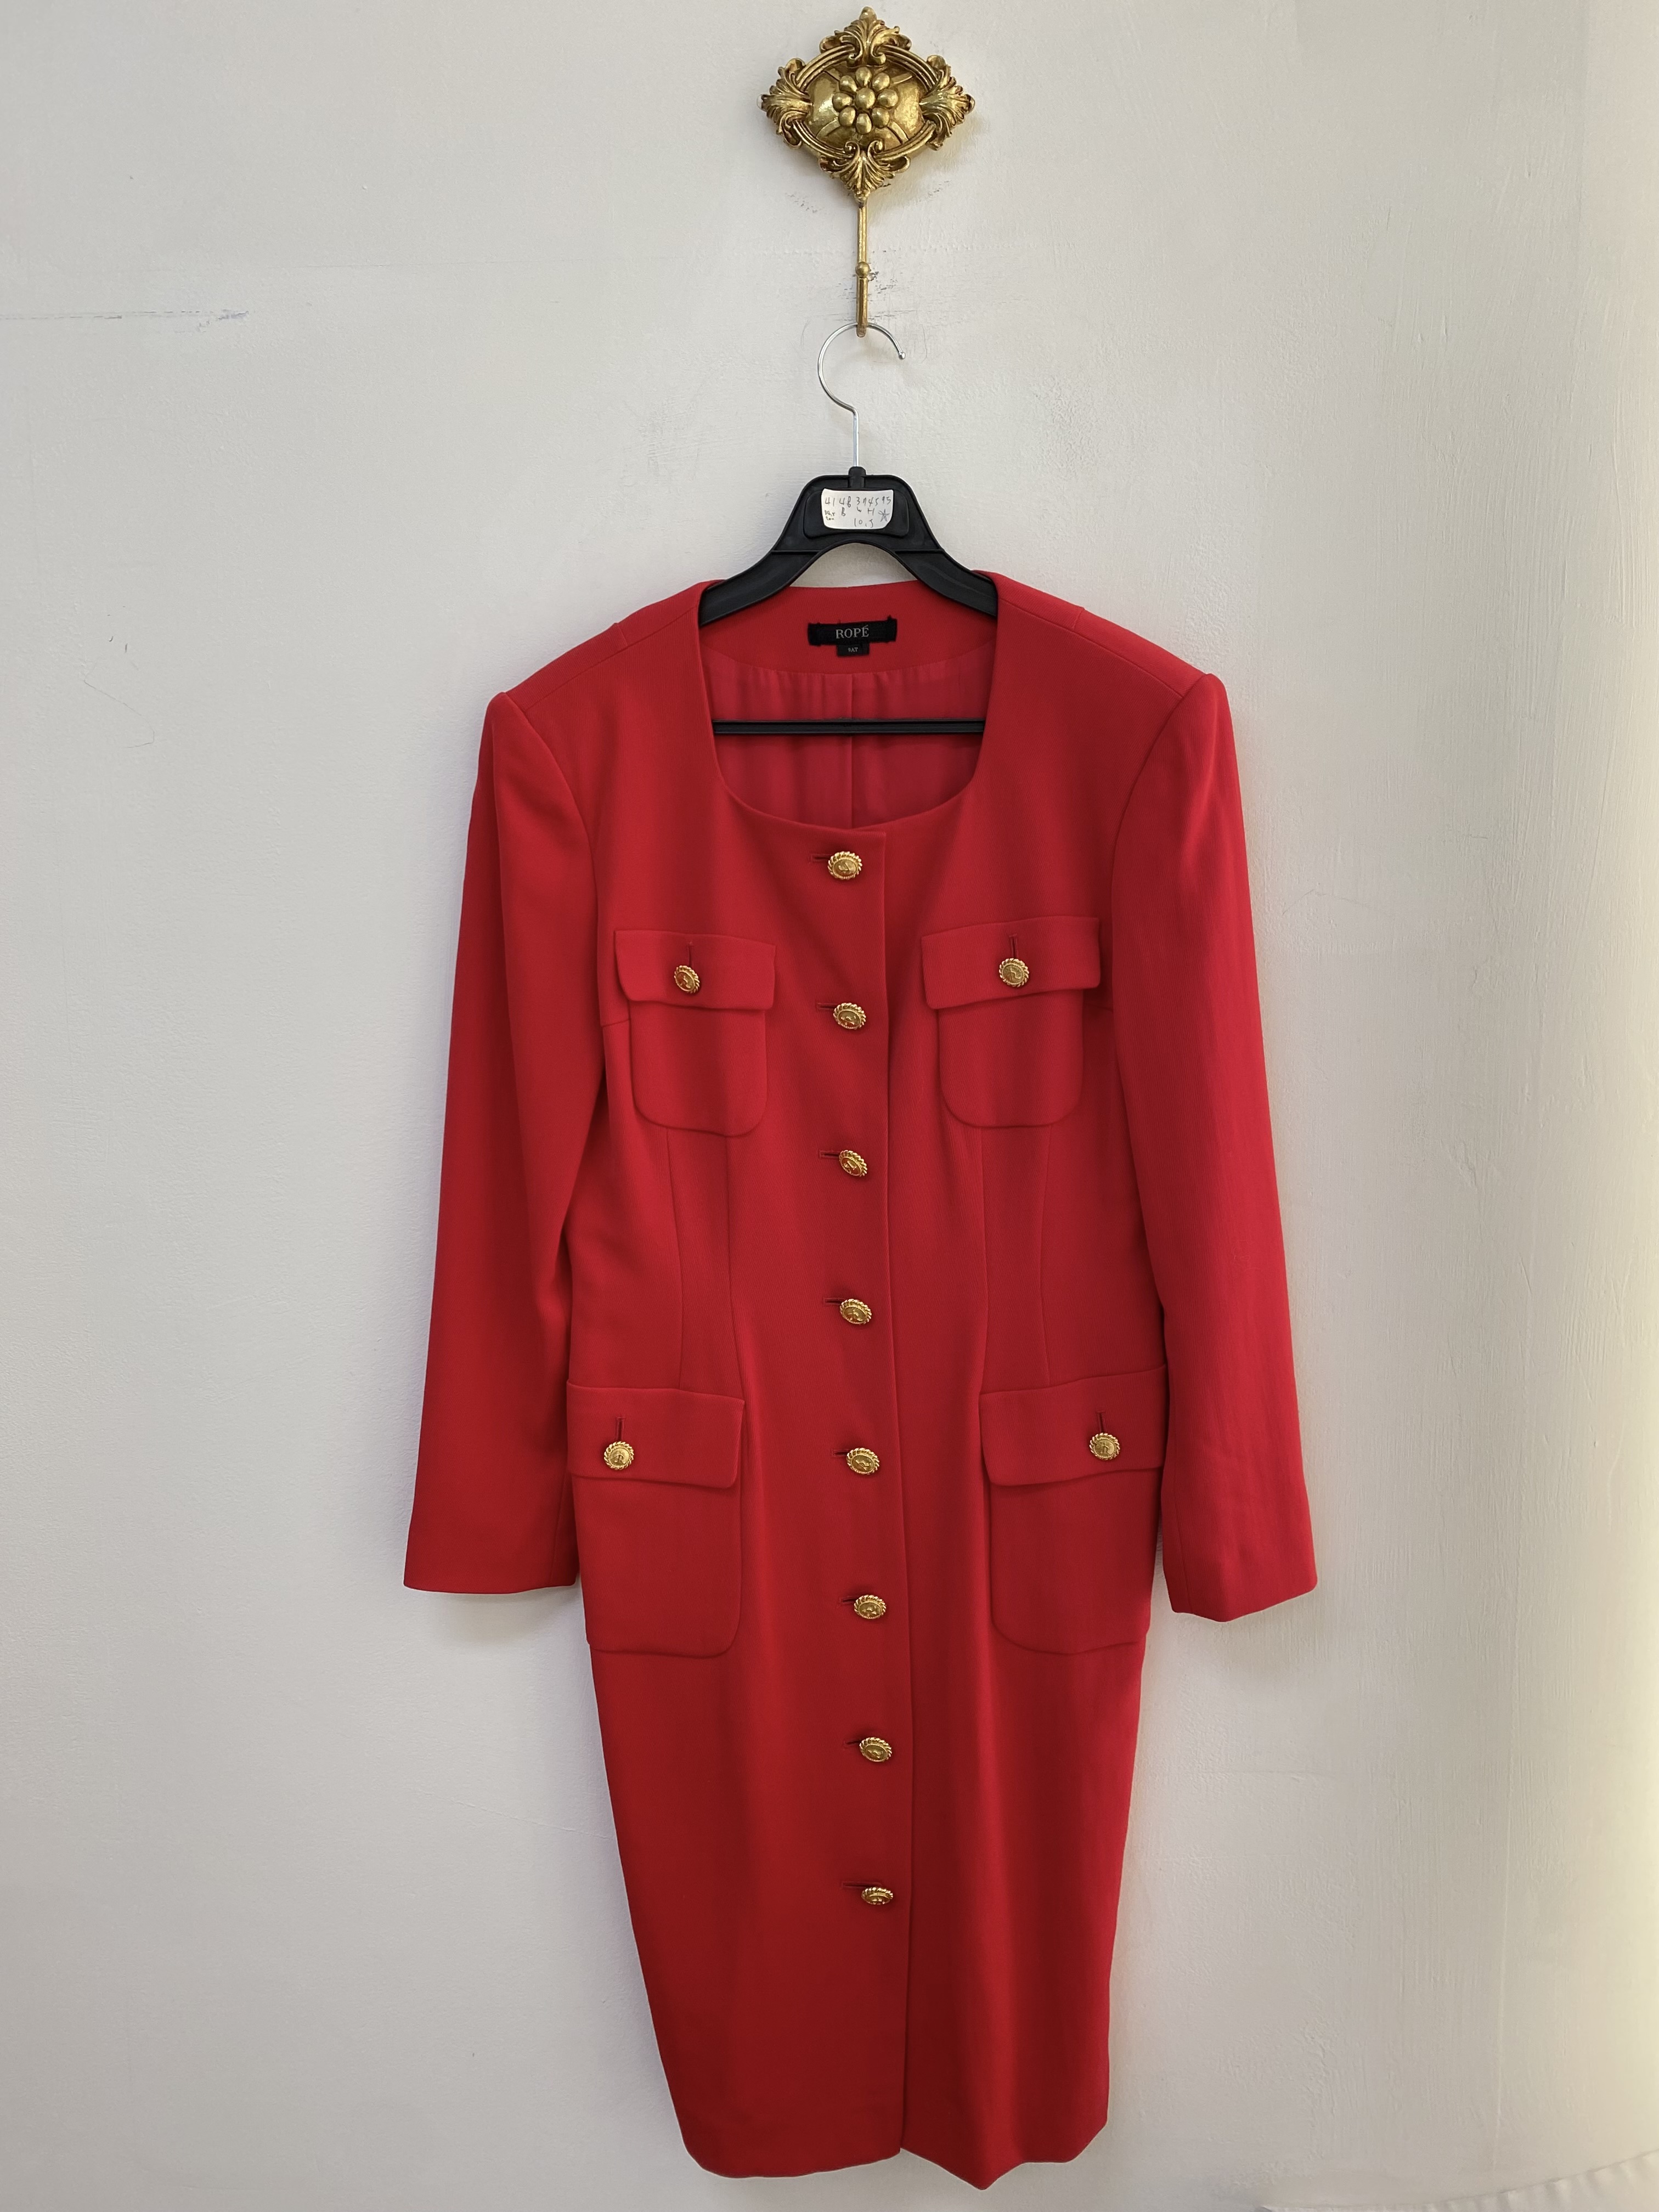 ROPÉ red gold button pocket dress